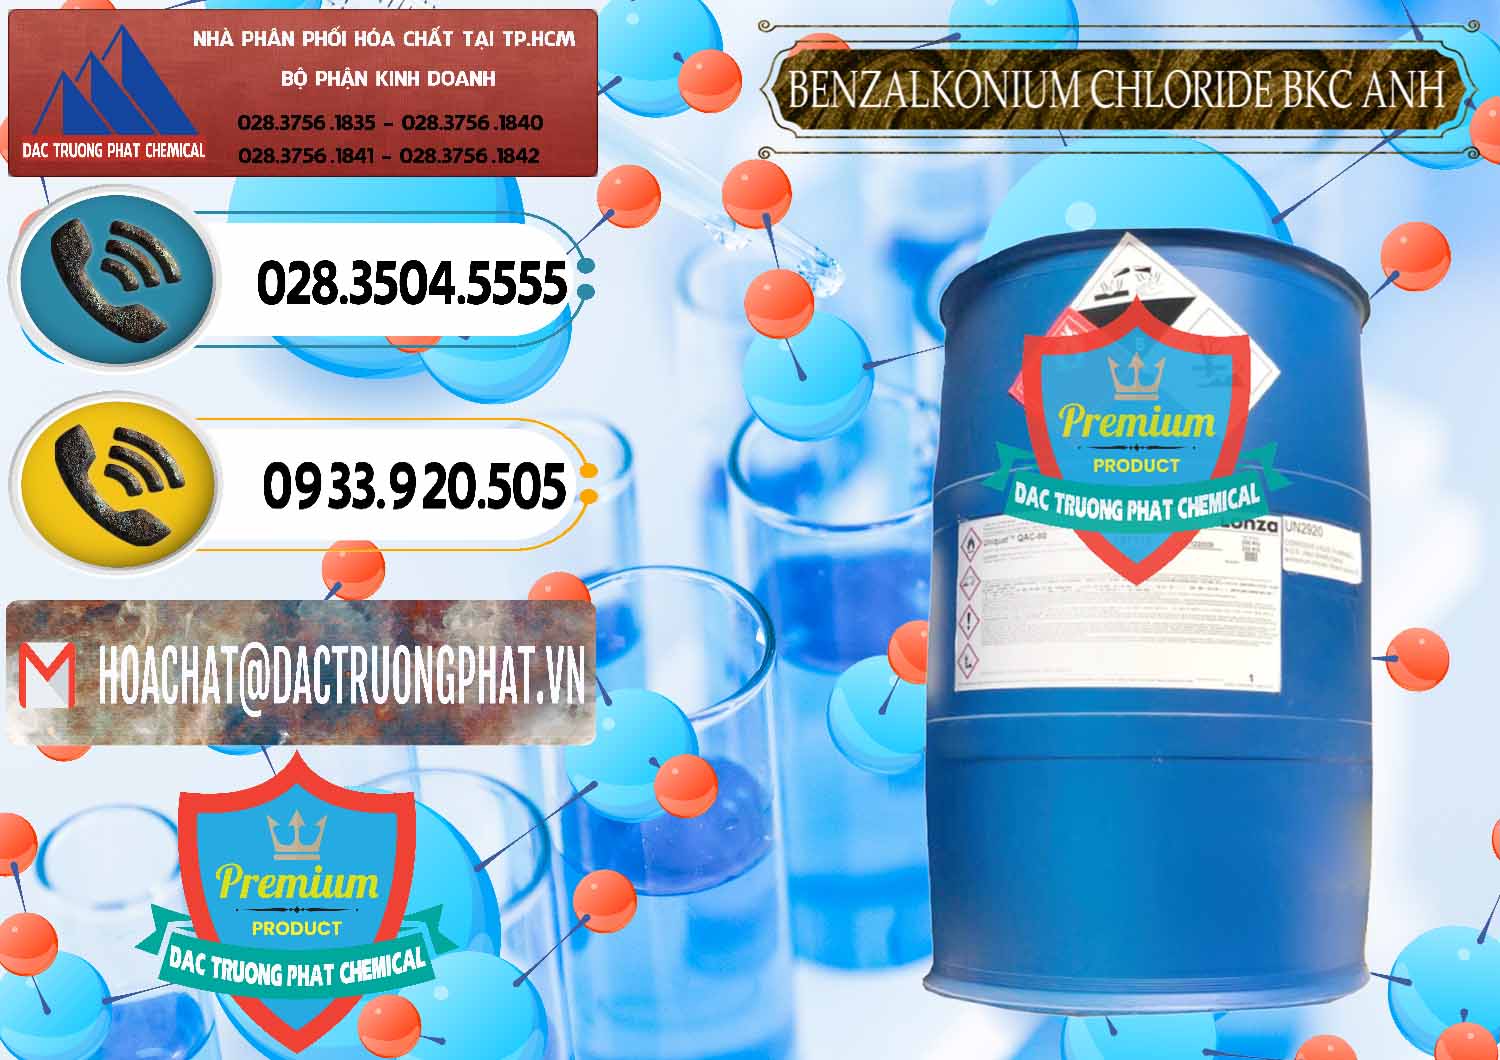 Đơn vị cung ứng - bán BKC - Benzalkonium Chloride 80% Anh Quốc Uk Kingdoms - 0457 - Chuyên phân phối ( bán ) hóa chất tại TP.HCM - hoachatdetnhuom.vn